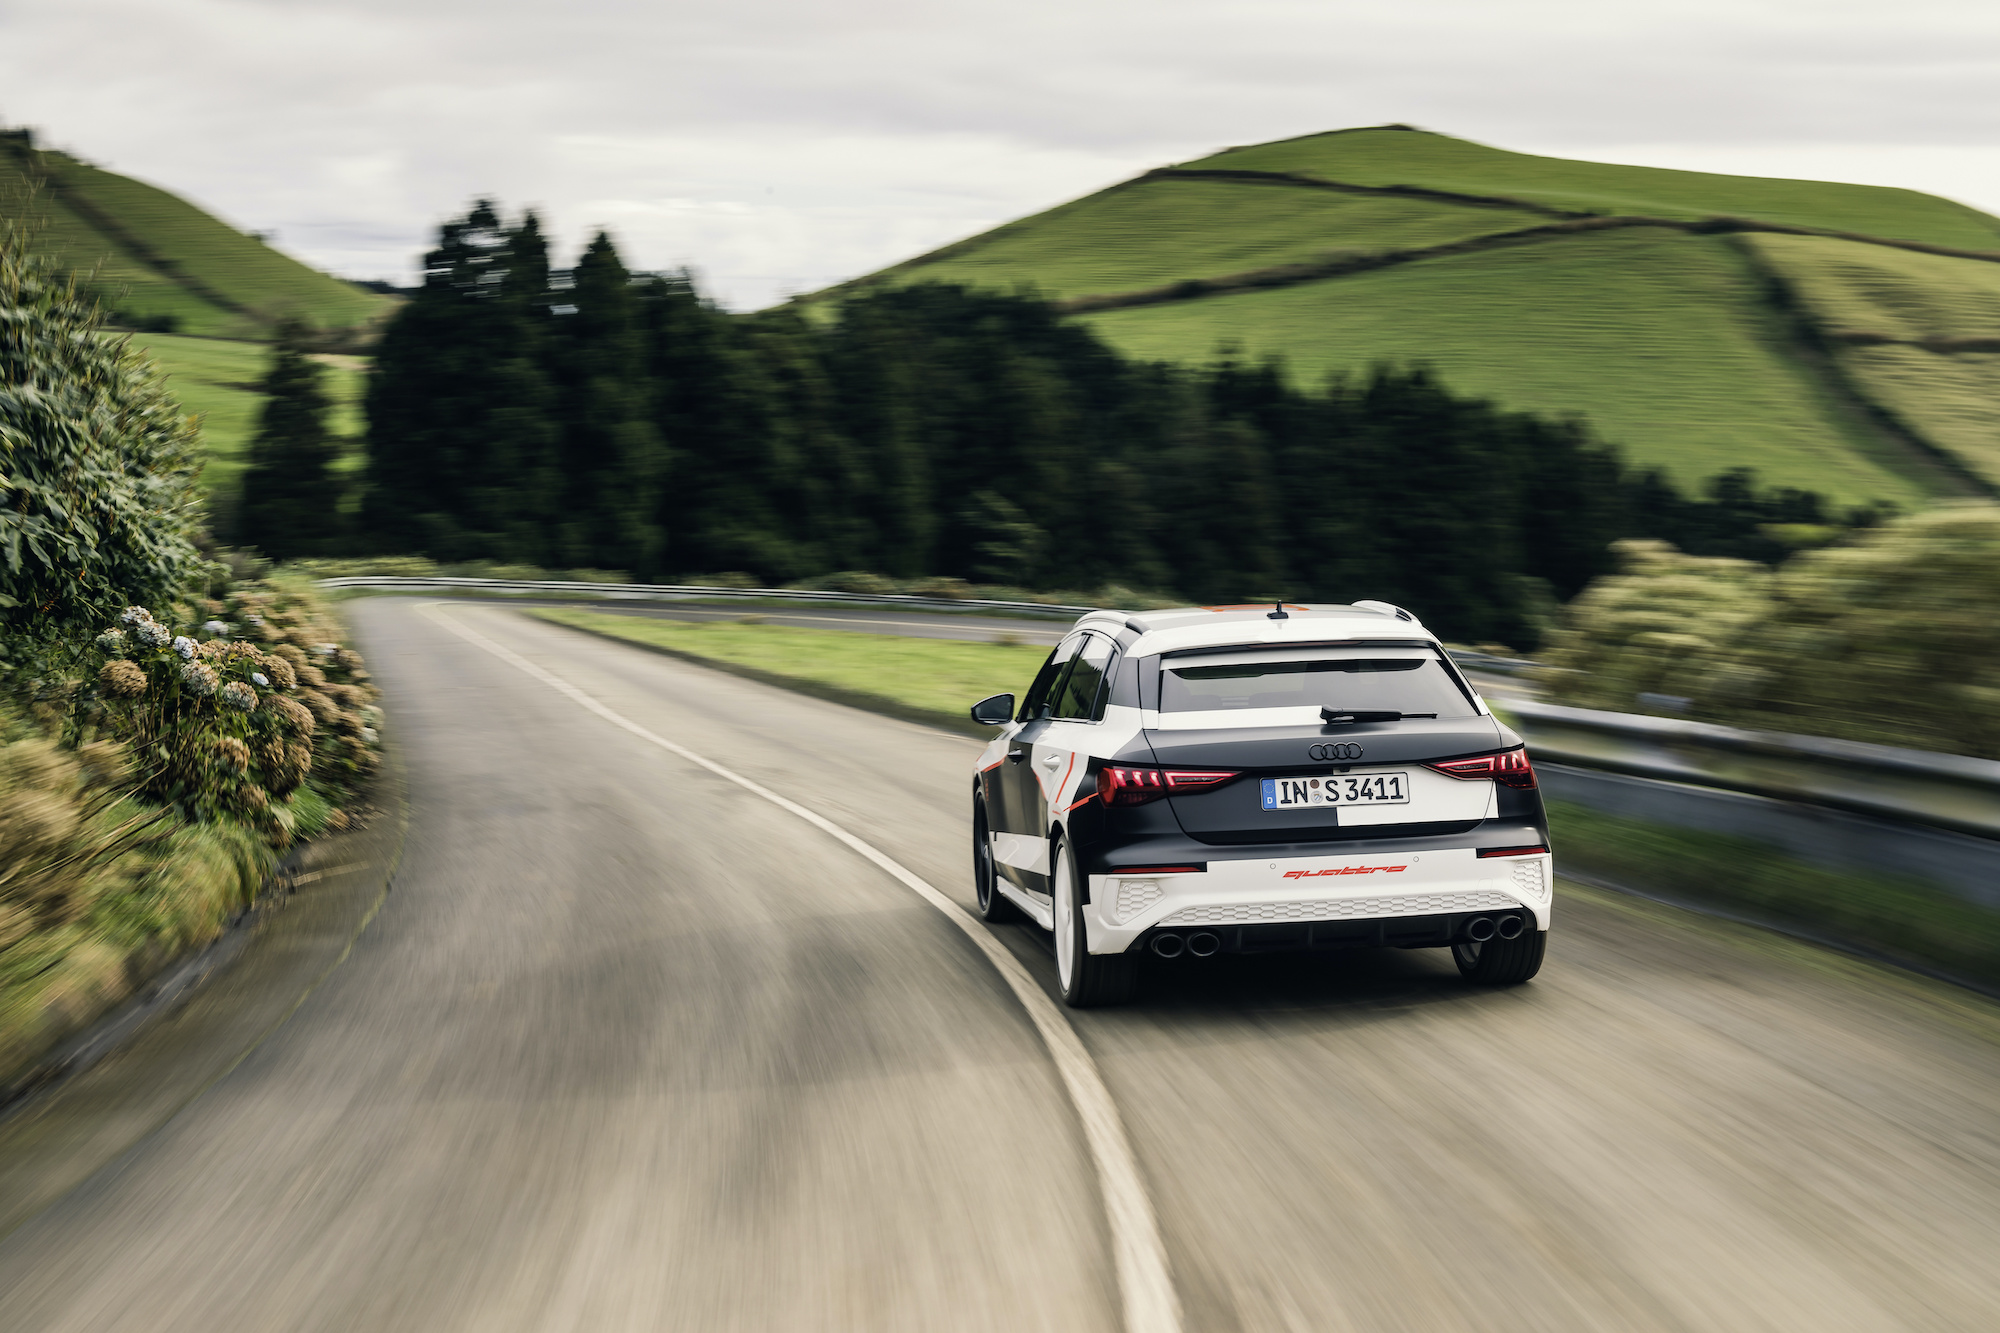 Audi quattro vozilo na podeželjski cesti. V ozadju drevesa in travniki